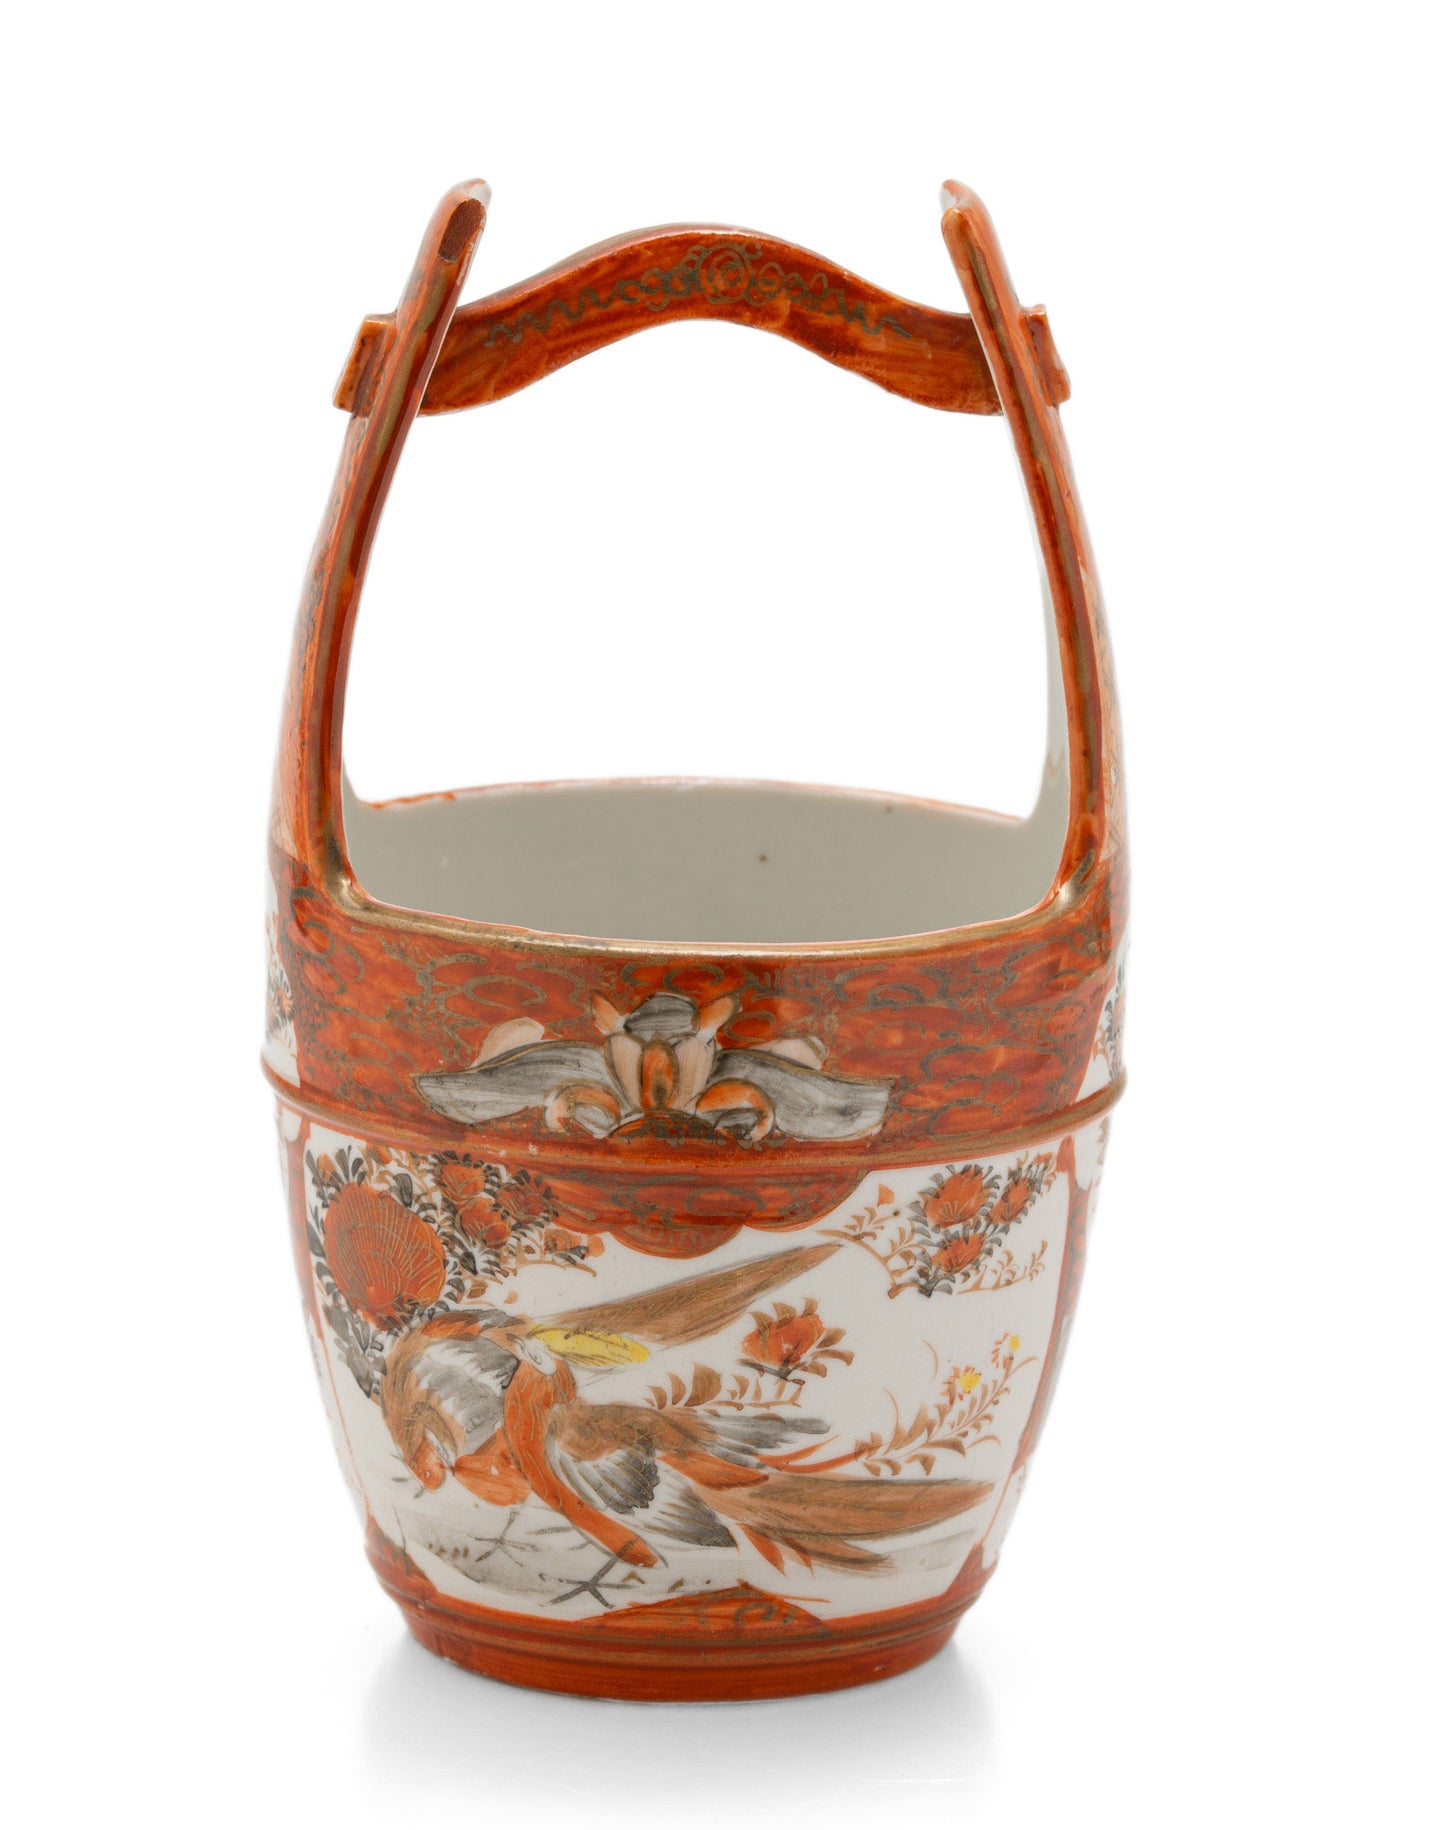 Japanese Kutani Porcelain Vase in Baketsu Design - Meiji Period Antique c1900 (Code 2556)